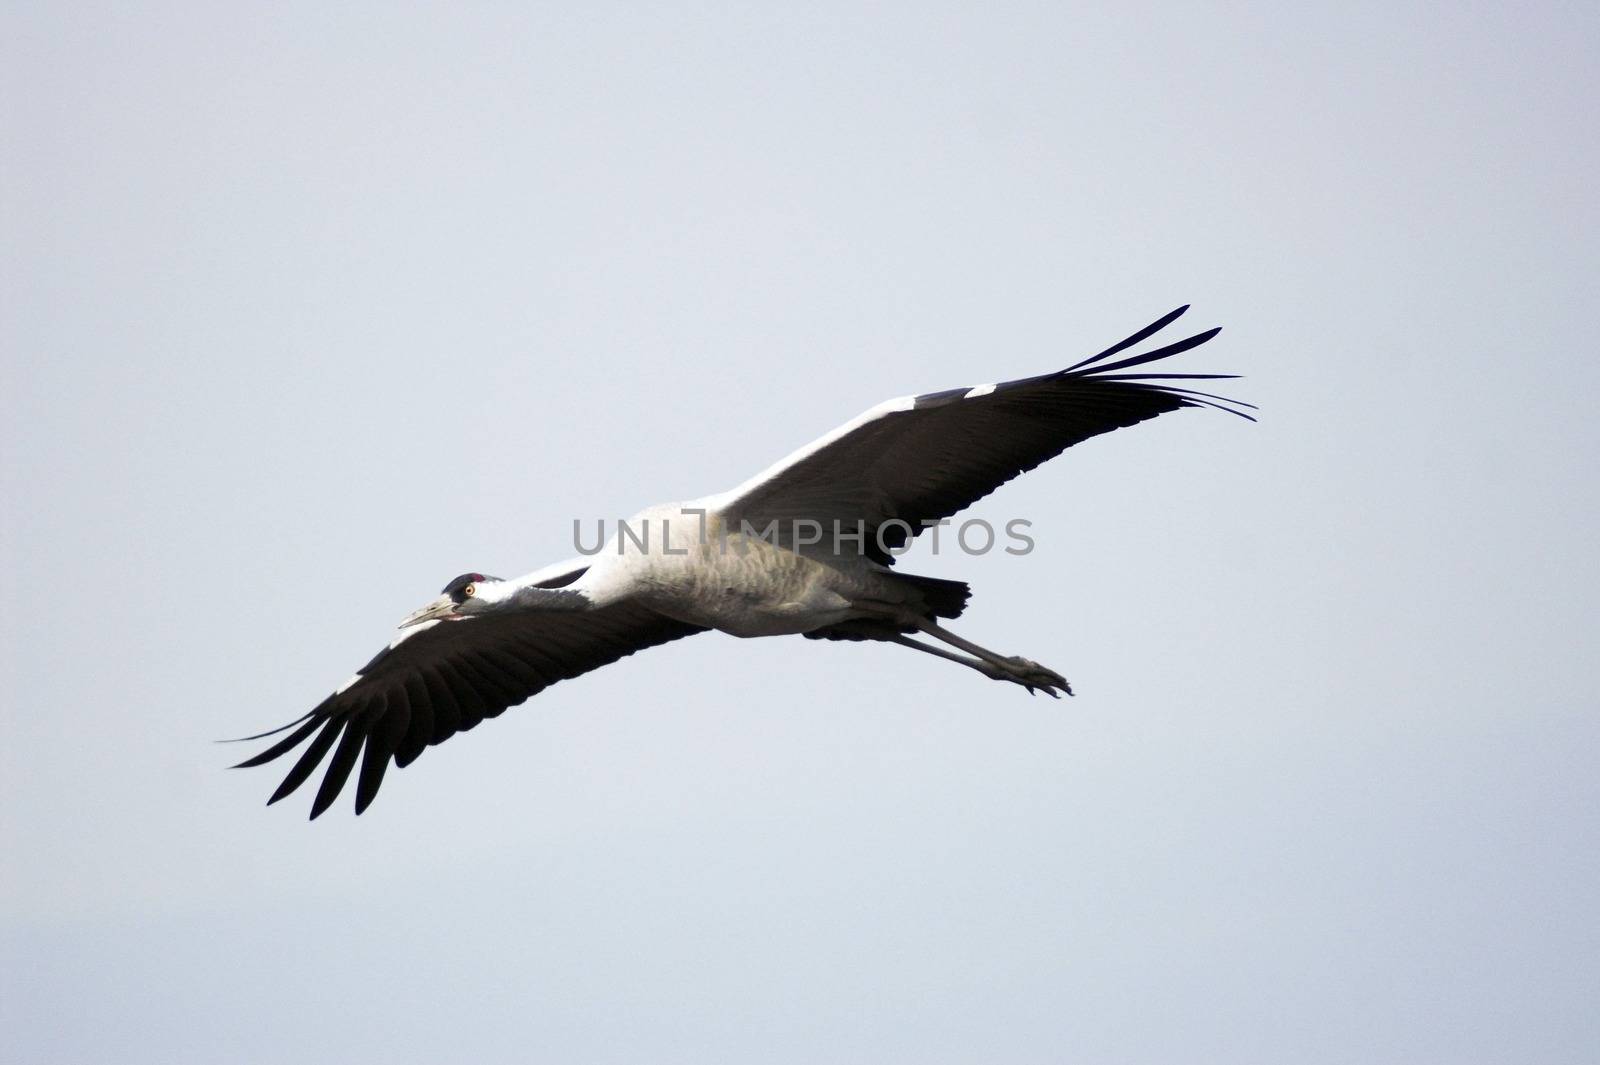 Stork flight by javax